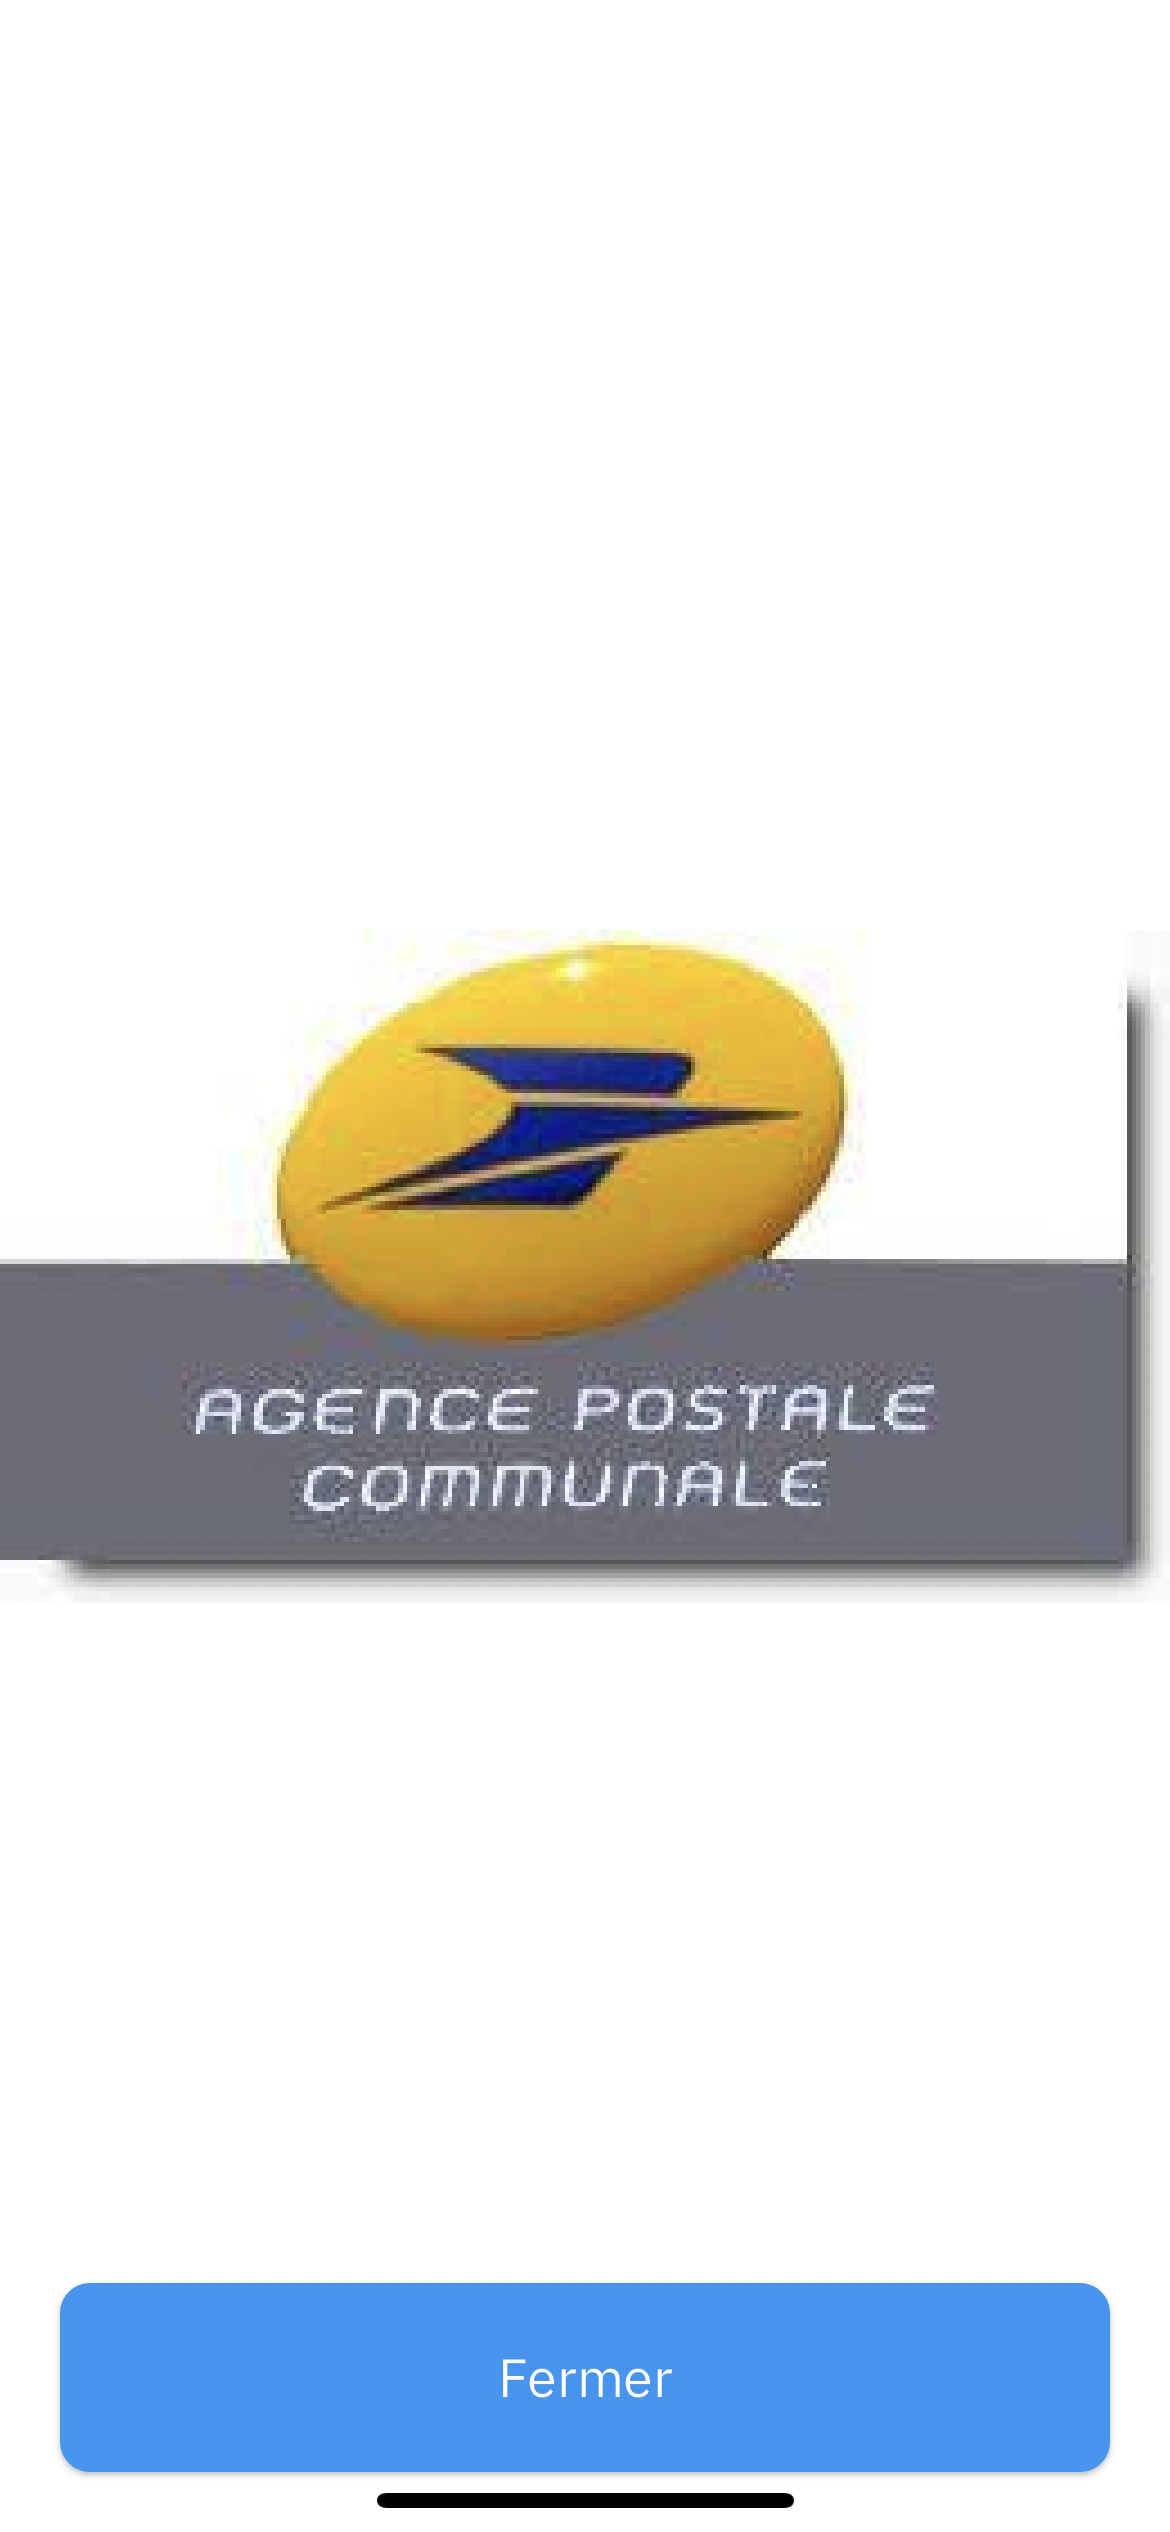 Image de couverture - Fermeture de l’ agence postale communale de Pact pendant la période estivale